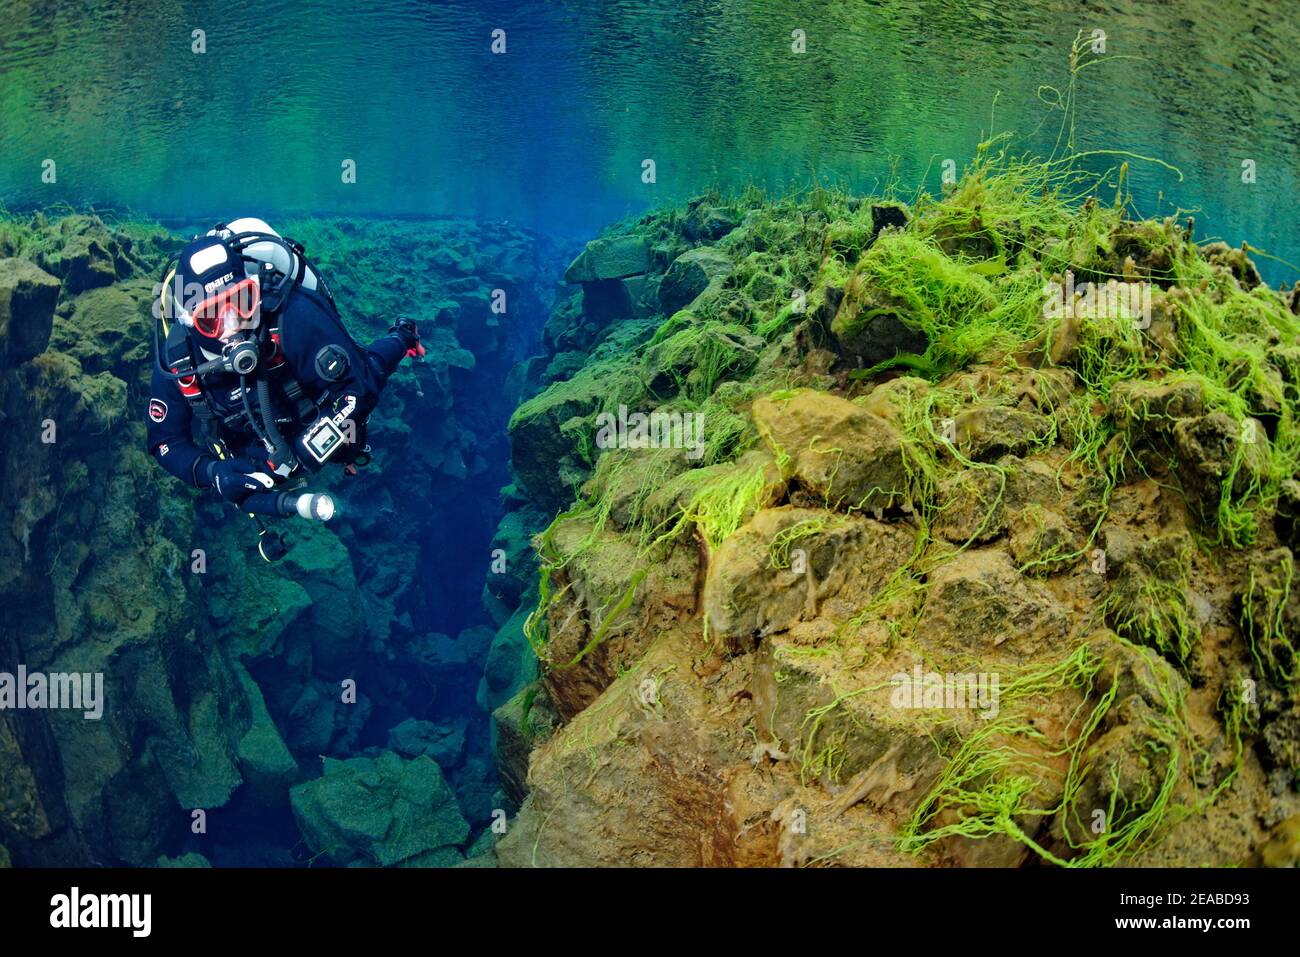 Silfra fissure, plongeur dans la fissure continentale Silfra, plongée entre les continents, Parc national de Thingvellir, Islande Silfra est une fissure, faisant partie de la frontière tectonique divergente entre les plaques nord-américaines et eurasiennes Banque D'Images